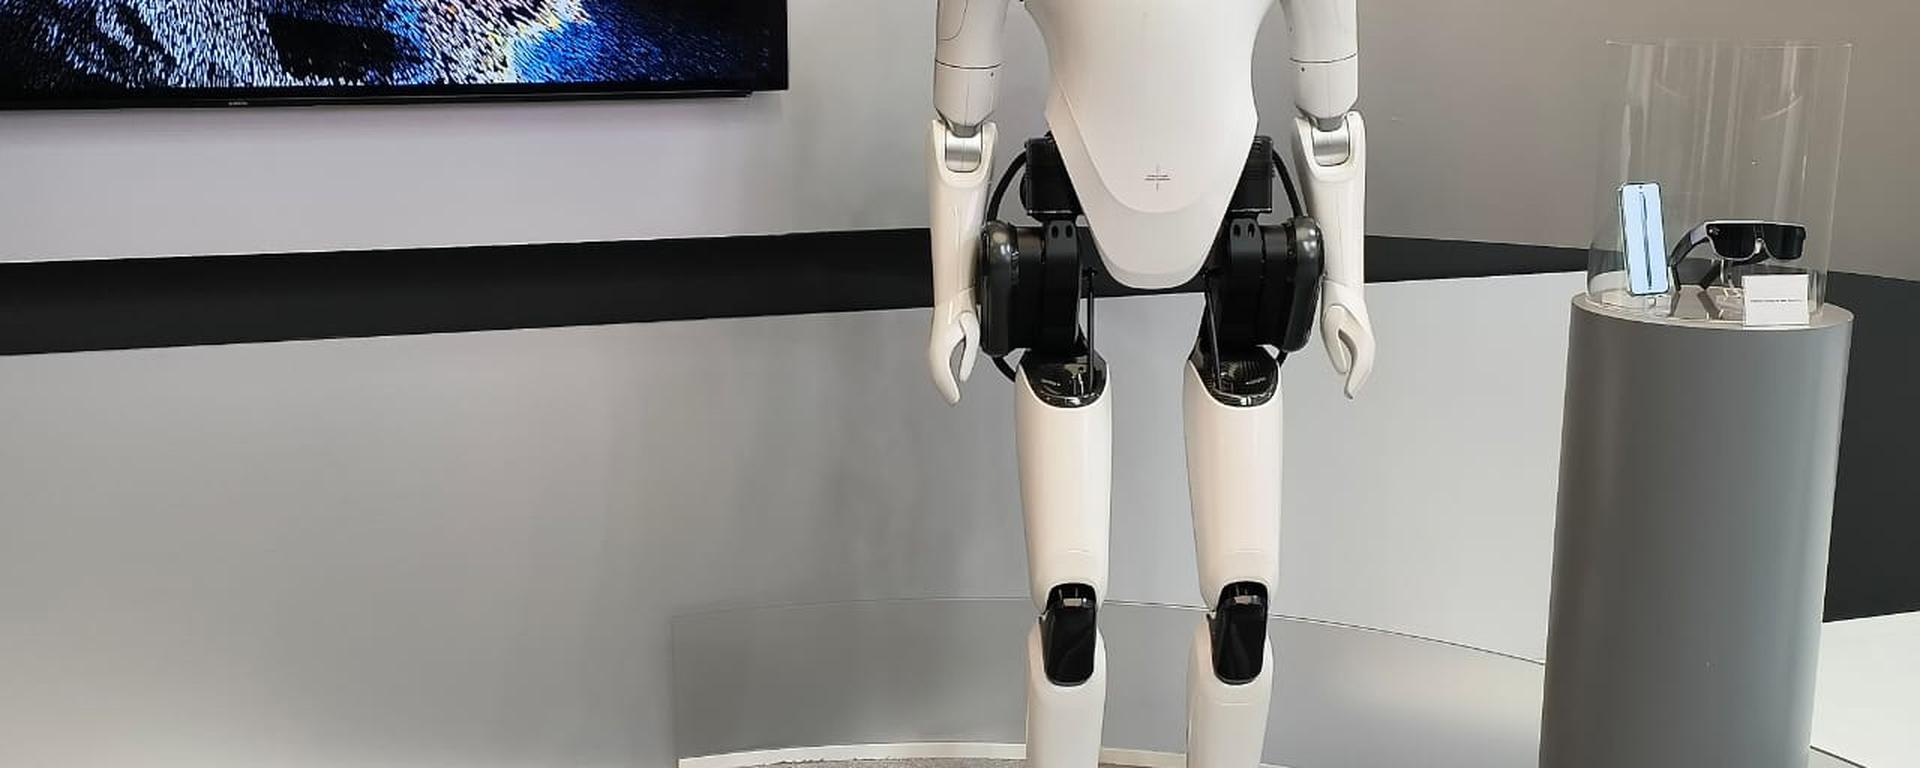 MWC 2023: CyberOne, el robot humanoide de casi 1,80 m con el que Xiaomi busca hacerle frente al Tesla Bot